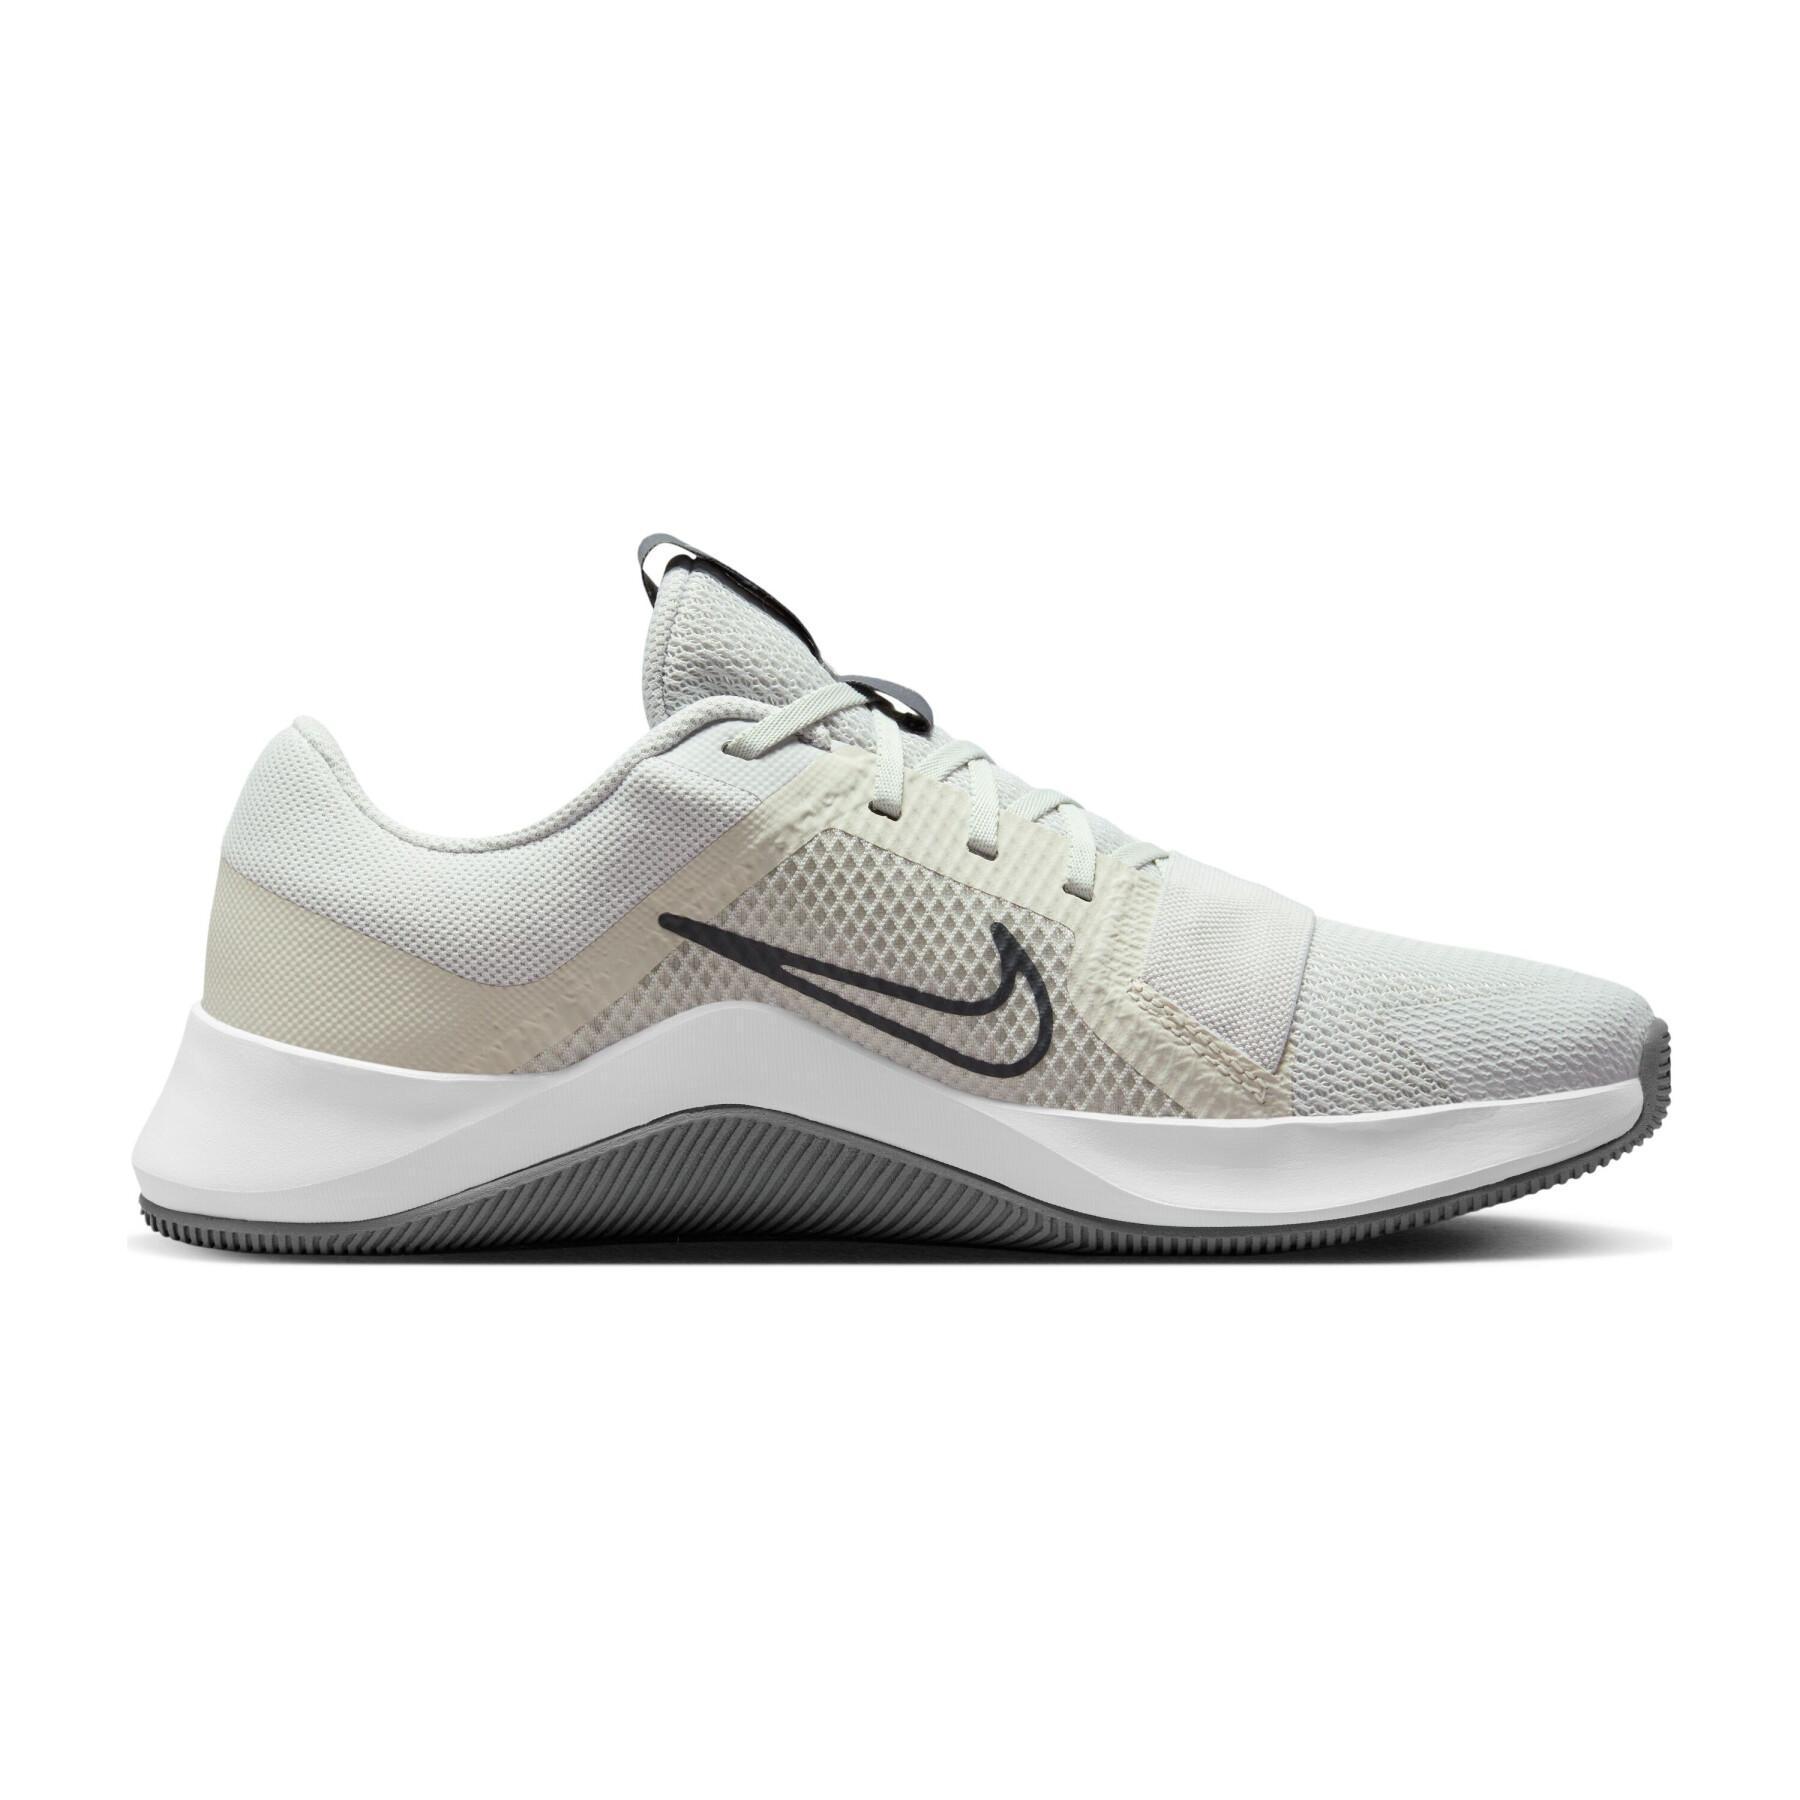 Buty do treningu biegowego Nike MC Trainer 2